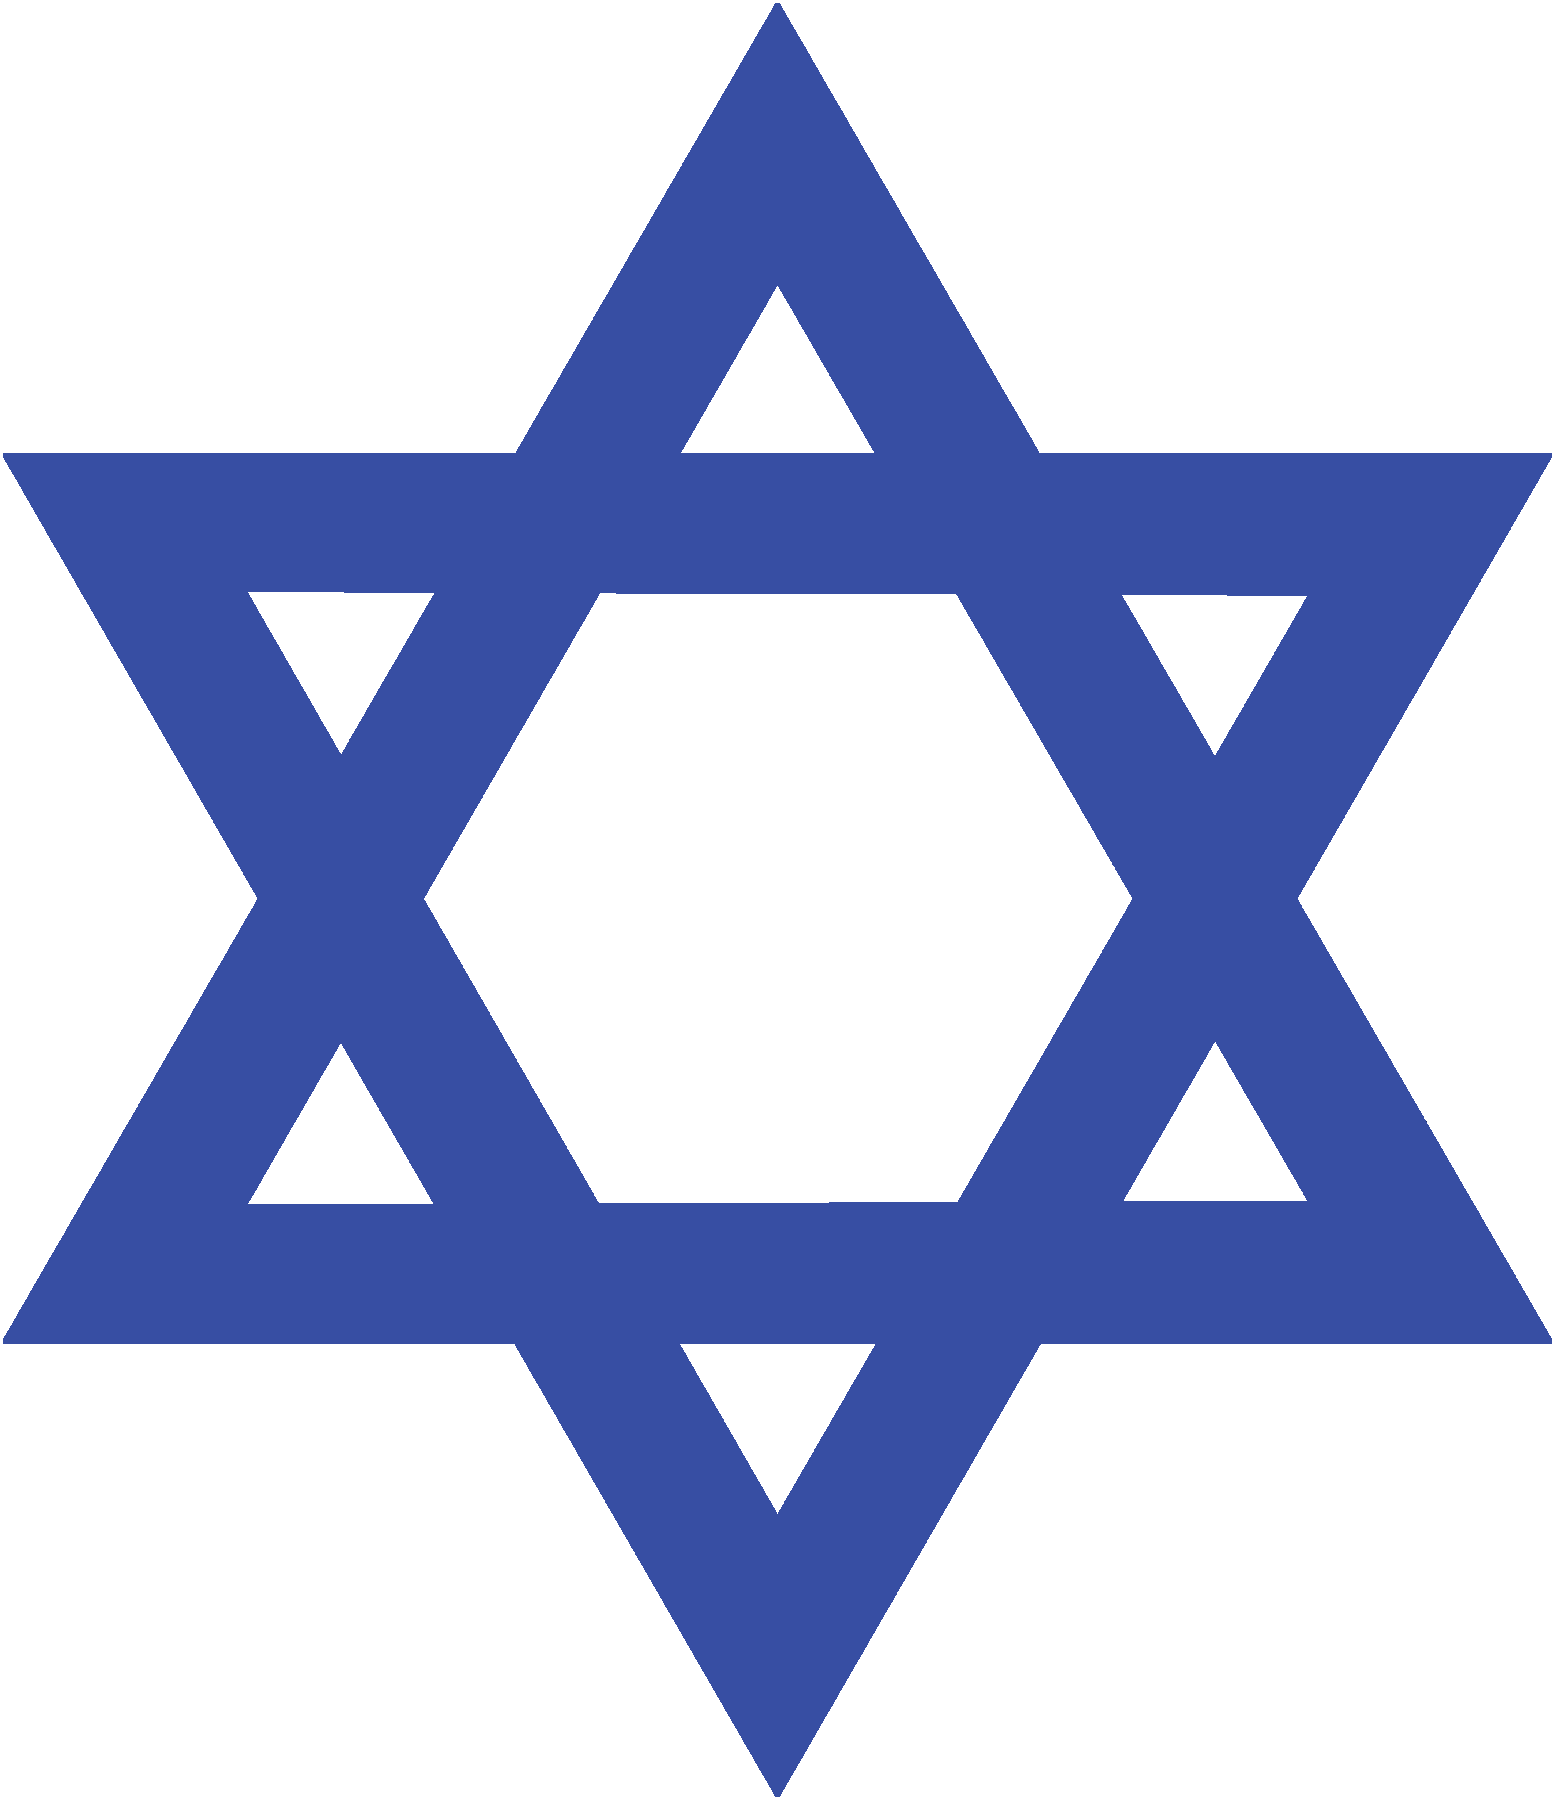 Ilustração. Estrela de Davi composta por seis pontas, com dois triângulos entrelaçados de cor azul.